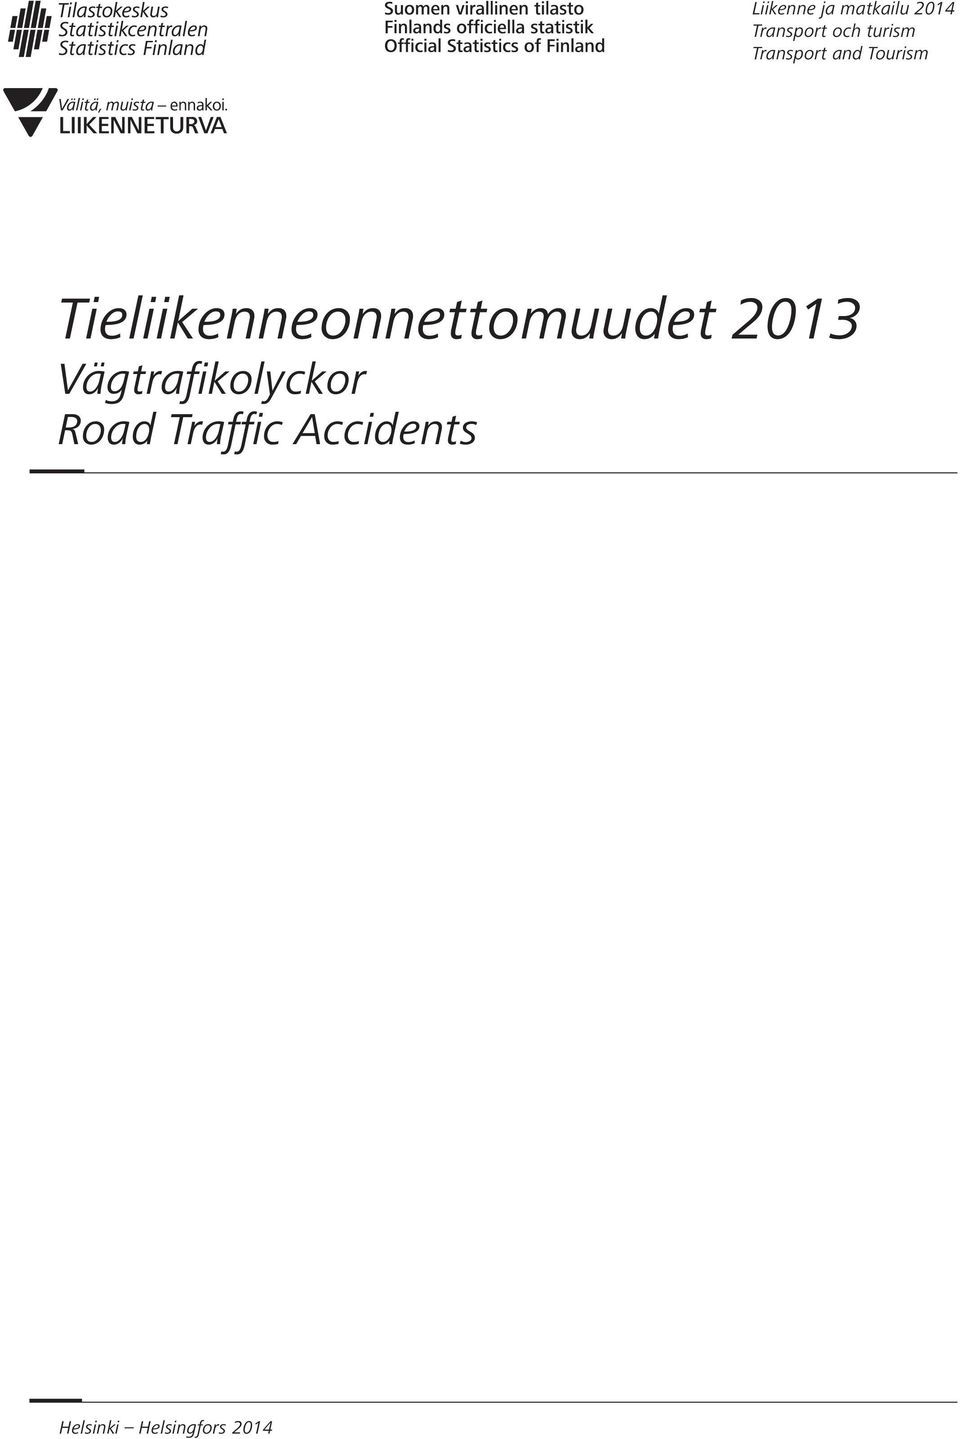 Tieliikenneonnettomuudet 2013